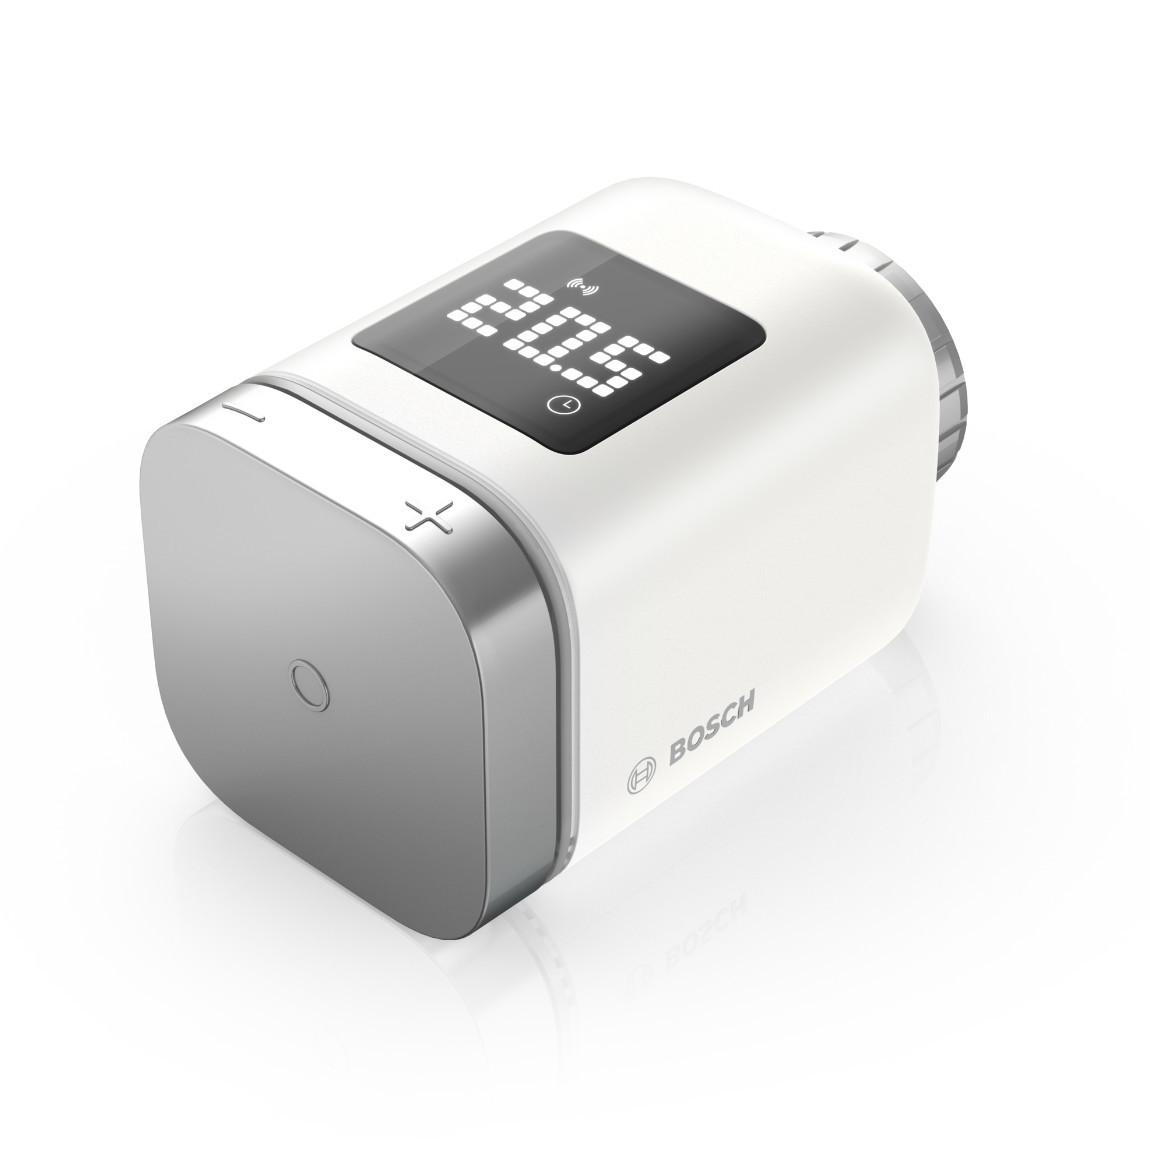 Bosch Smart Home - Starter Set Heizung II mit 5 Thermostaten & 4 Tür-/Fensterkontakt II_Thermostat schraeg